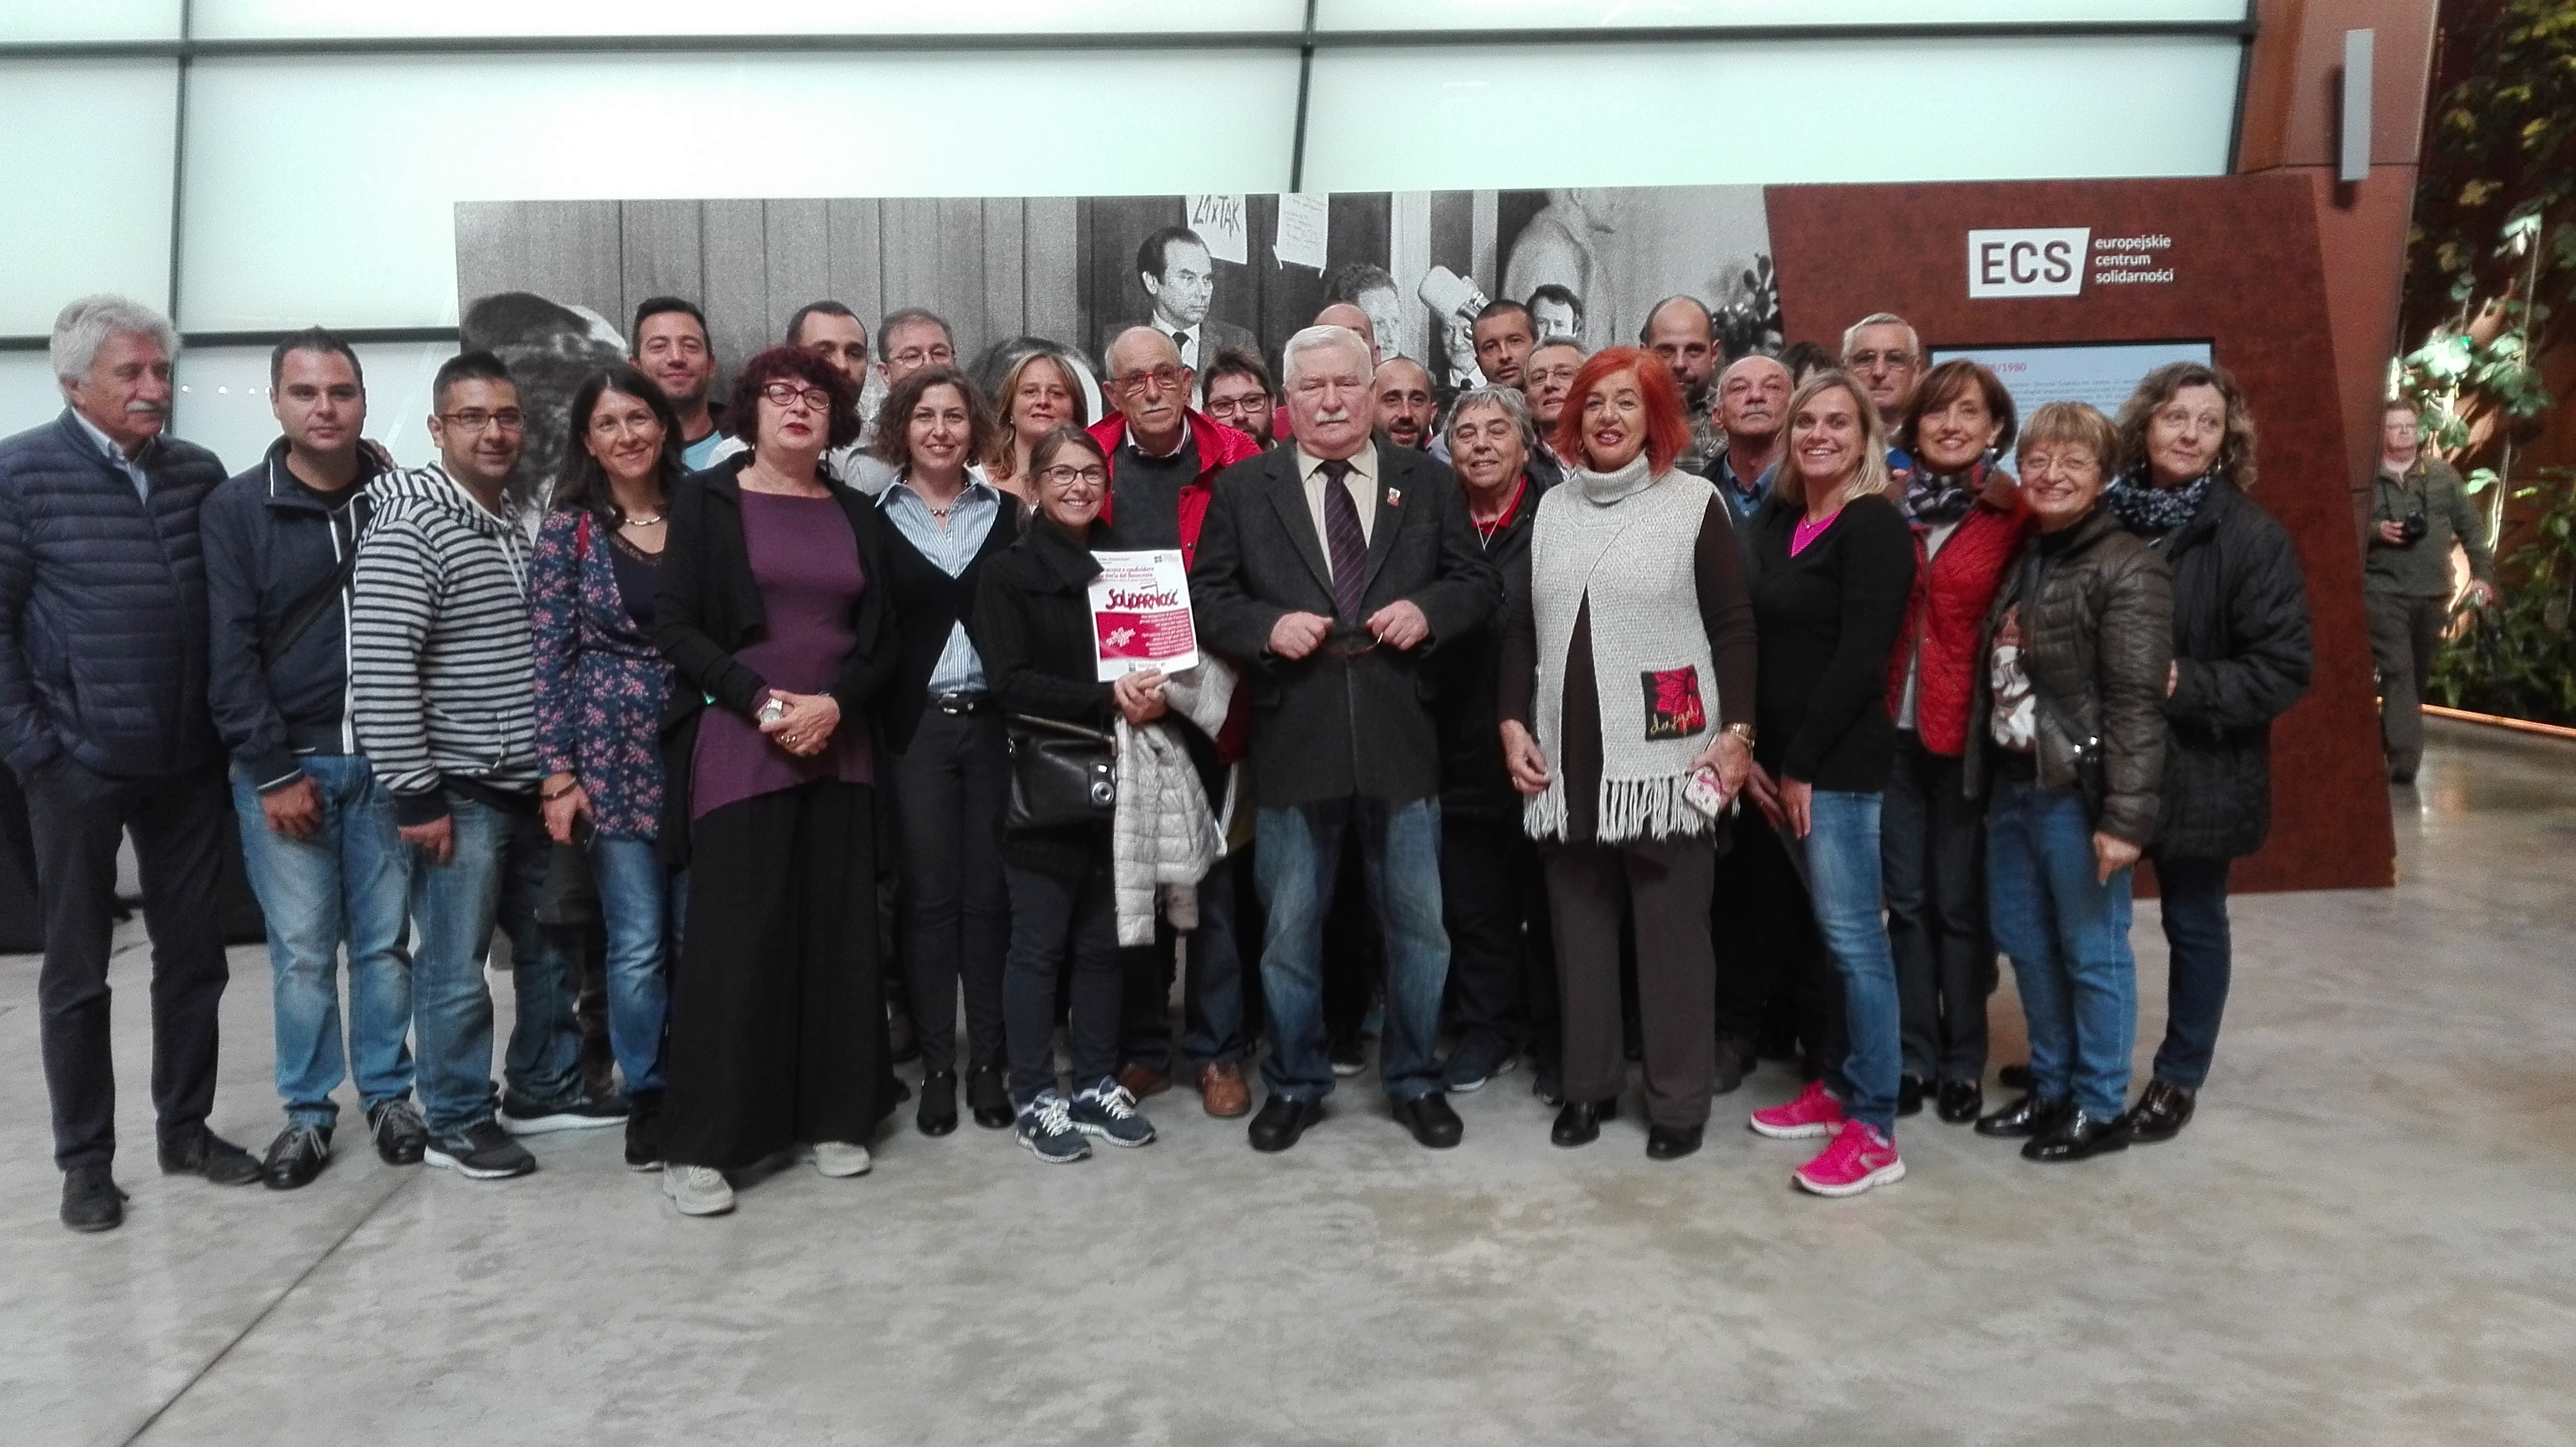 L'incontro con Lech Walesa, leader di Solidarnosc